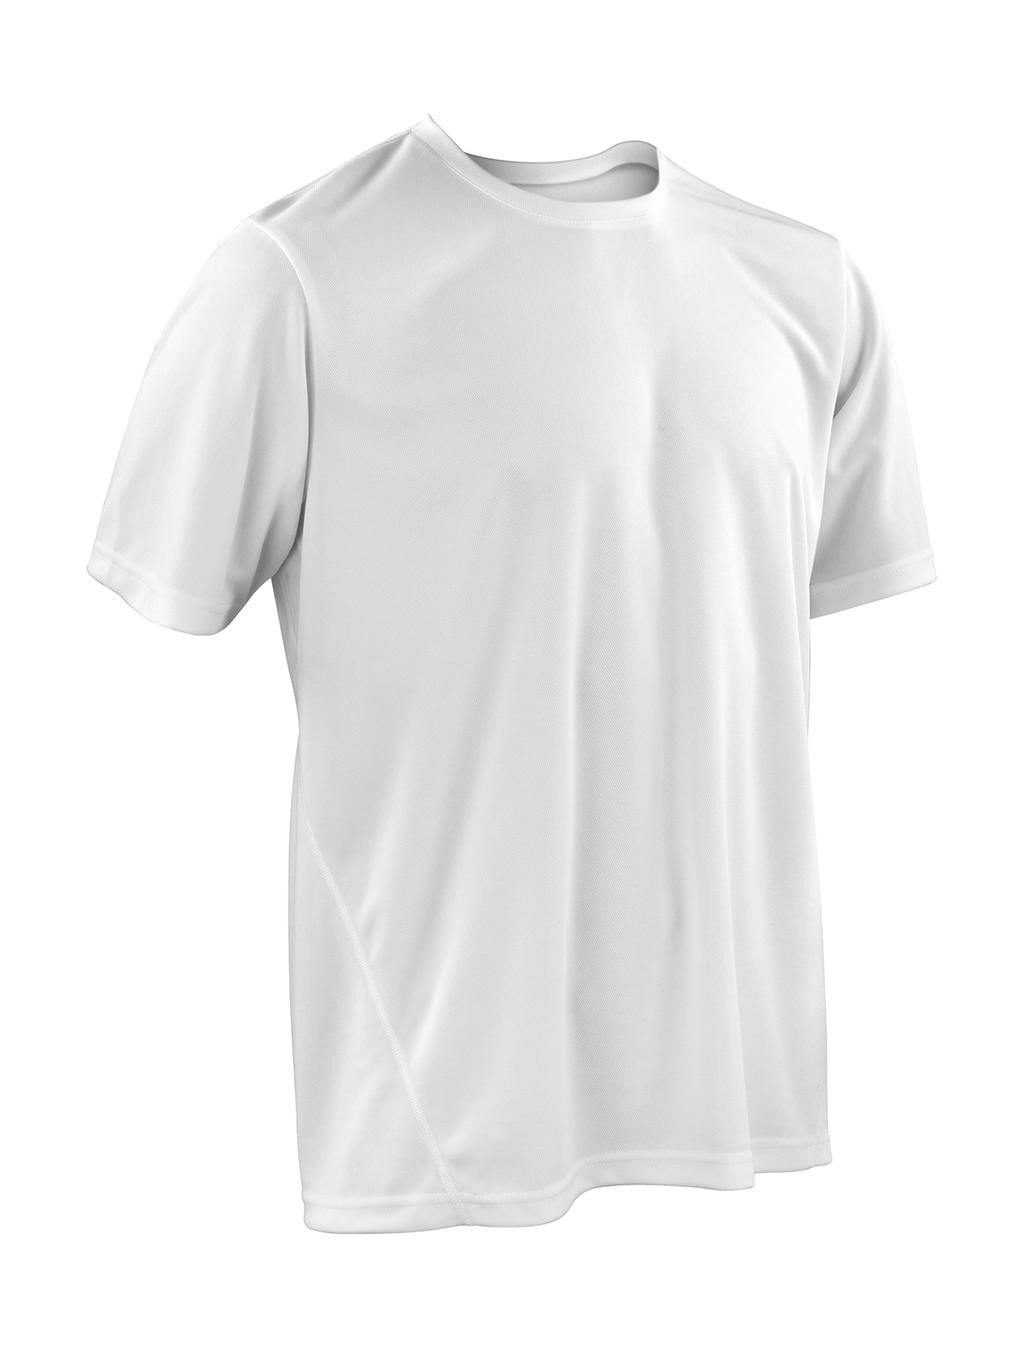 Performance T-Shirt zum Besticken und Bedrucken in der Farbe White mit Ihren Logo, Schriftzug oder Motiv.